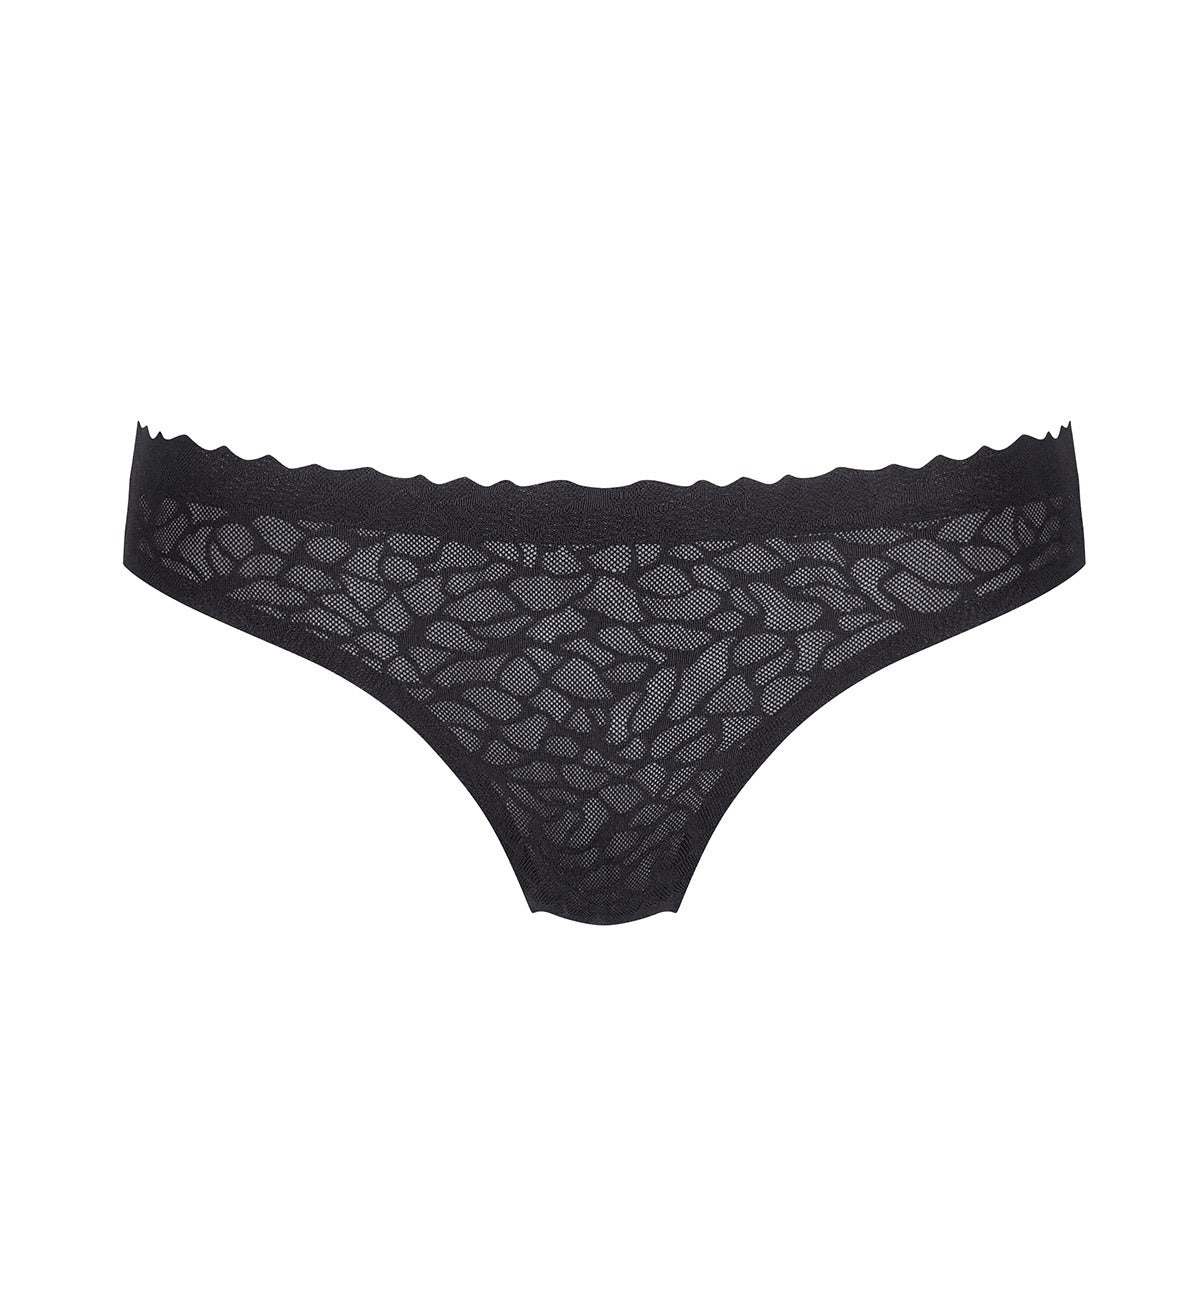 Sloggi Women's Zero Feel Lace Brazil Panty Slip, Black, XS price in UAE,  UAE